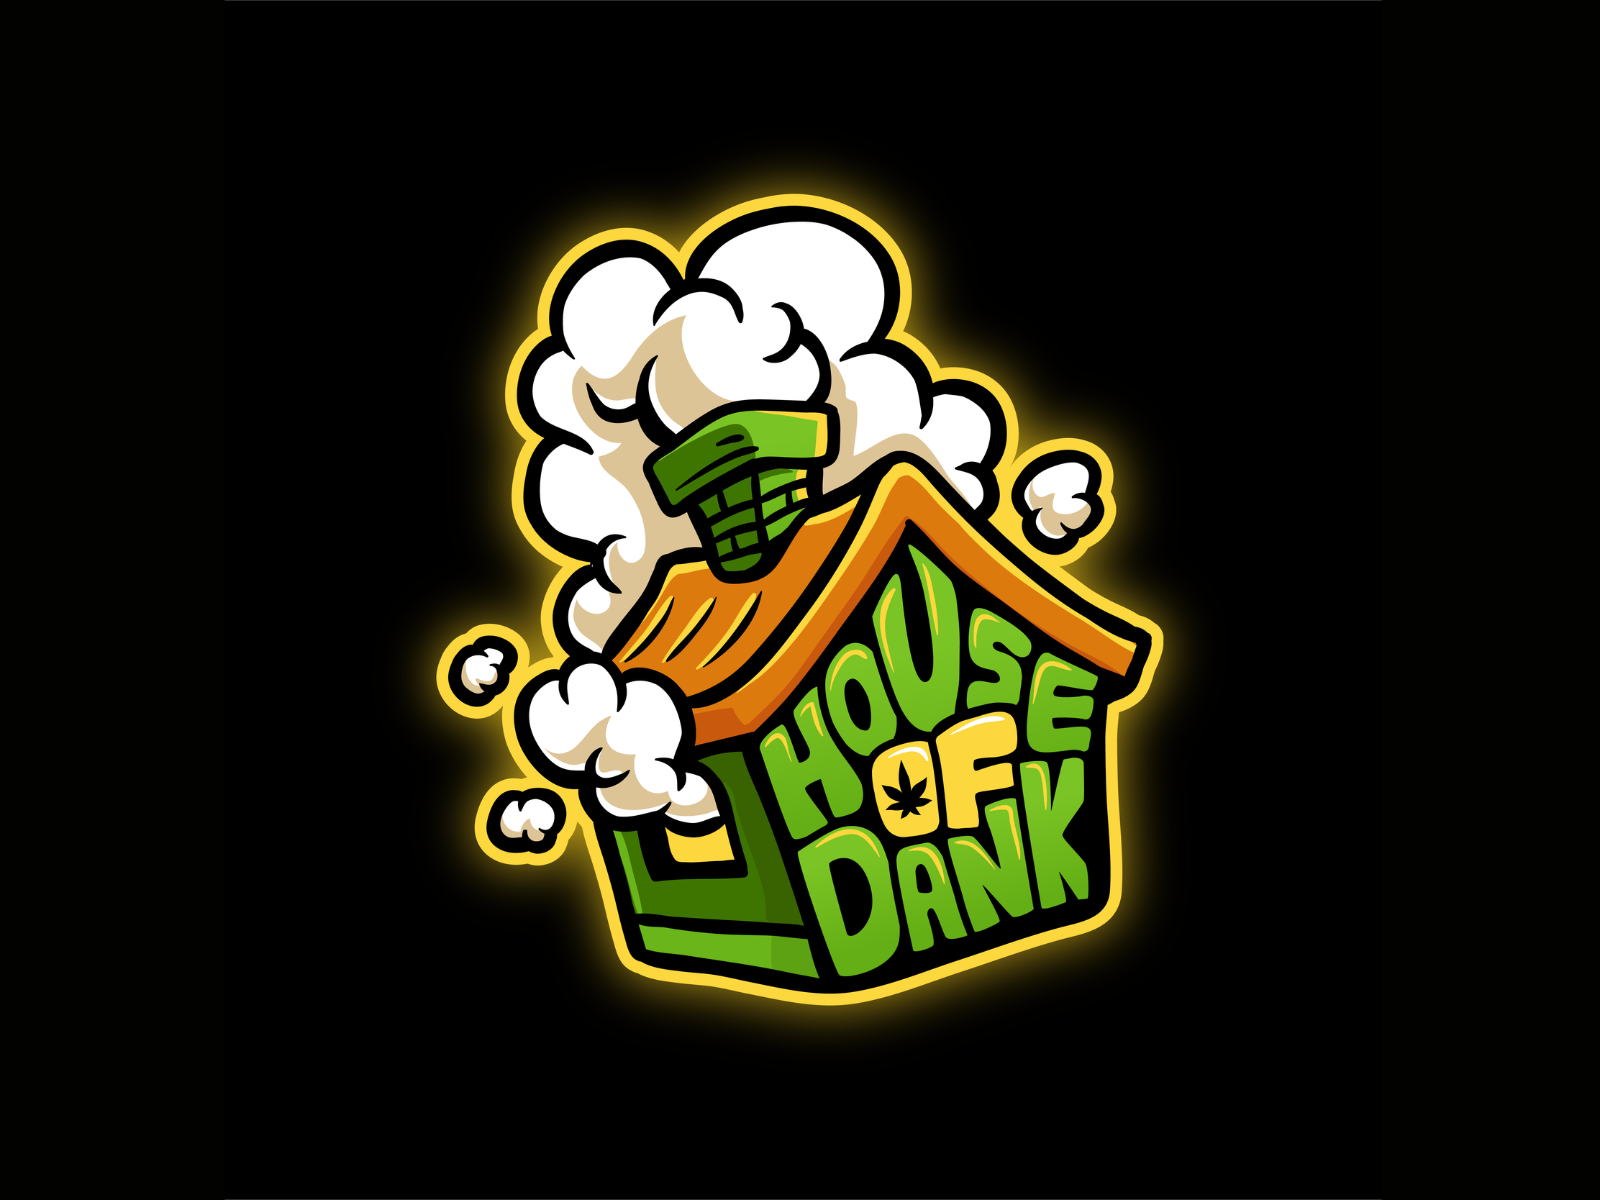 House of Dank Logo Design by Milan Drobac on Dribbble